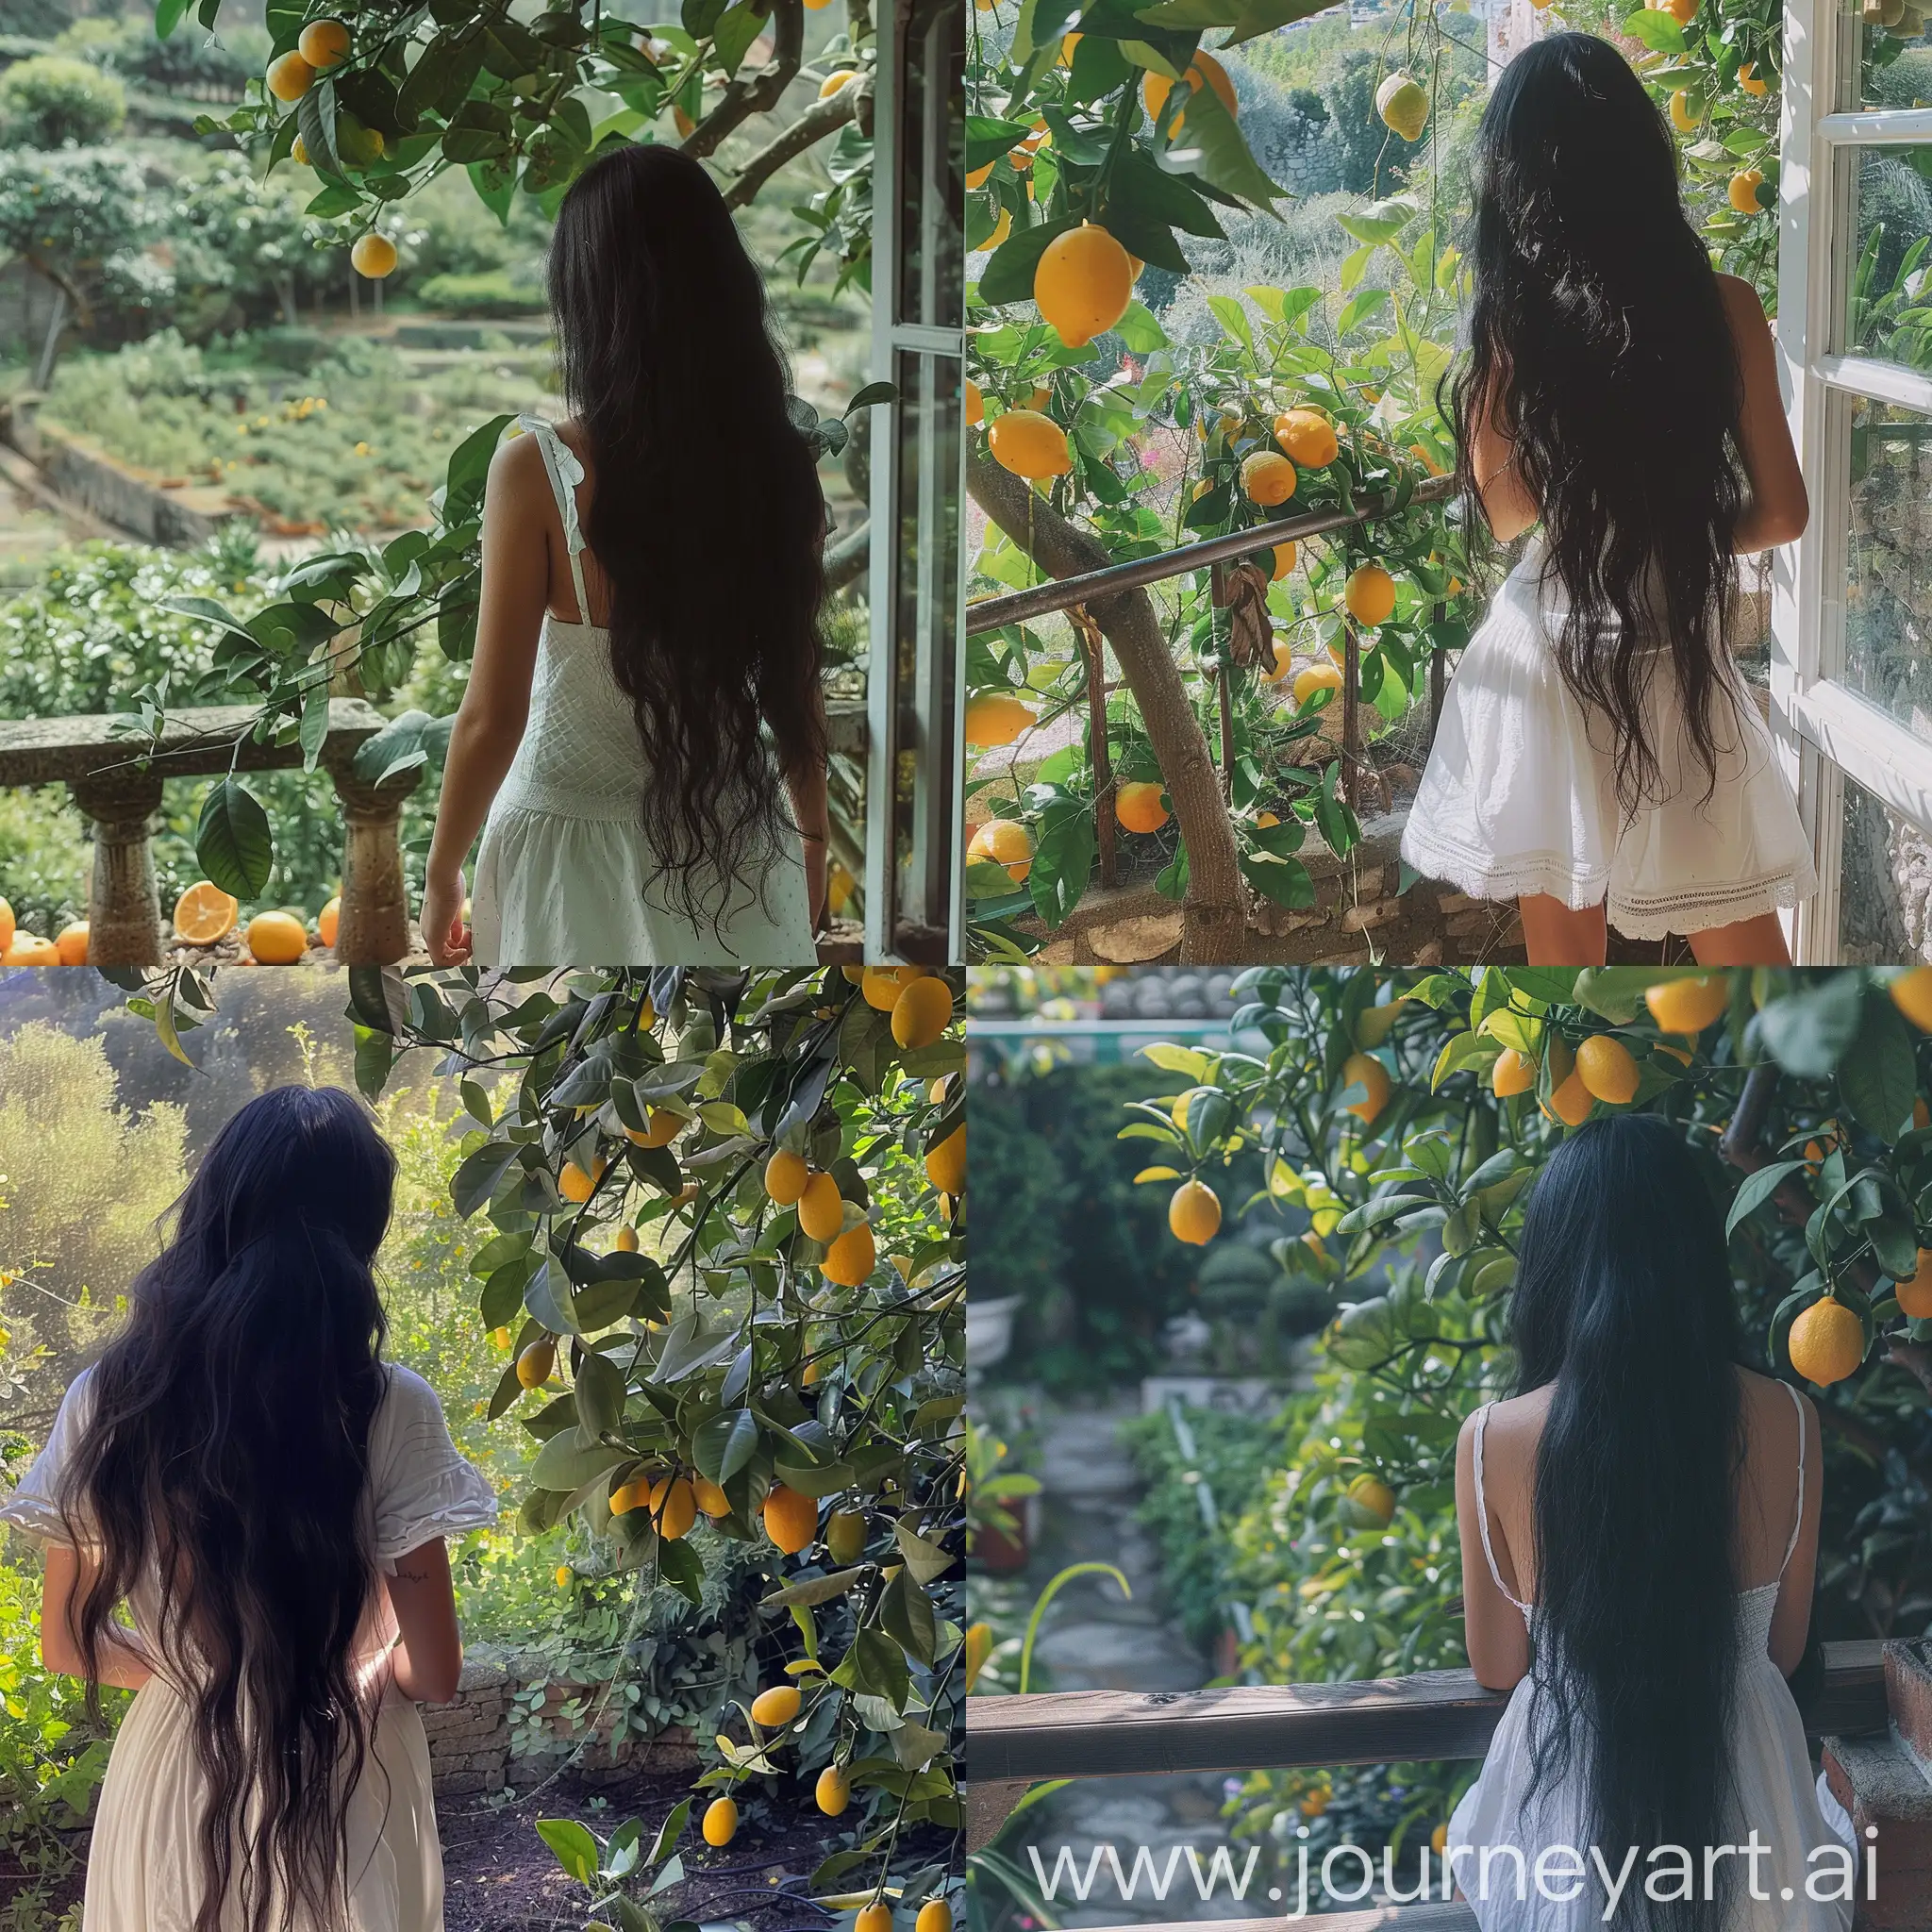 Serene-Moment-Elegant-Girl-in-White-Sun-Dress-Admiring-Garden-by-Lemon-Tree